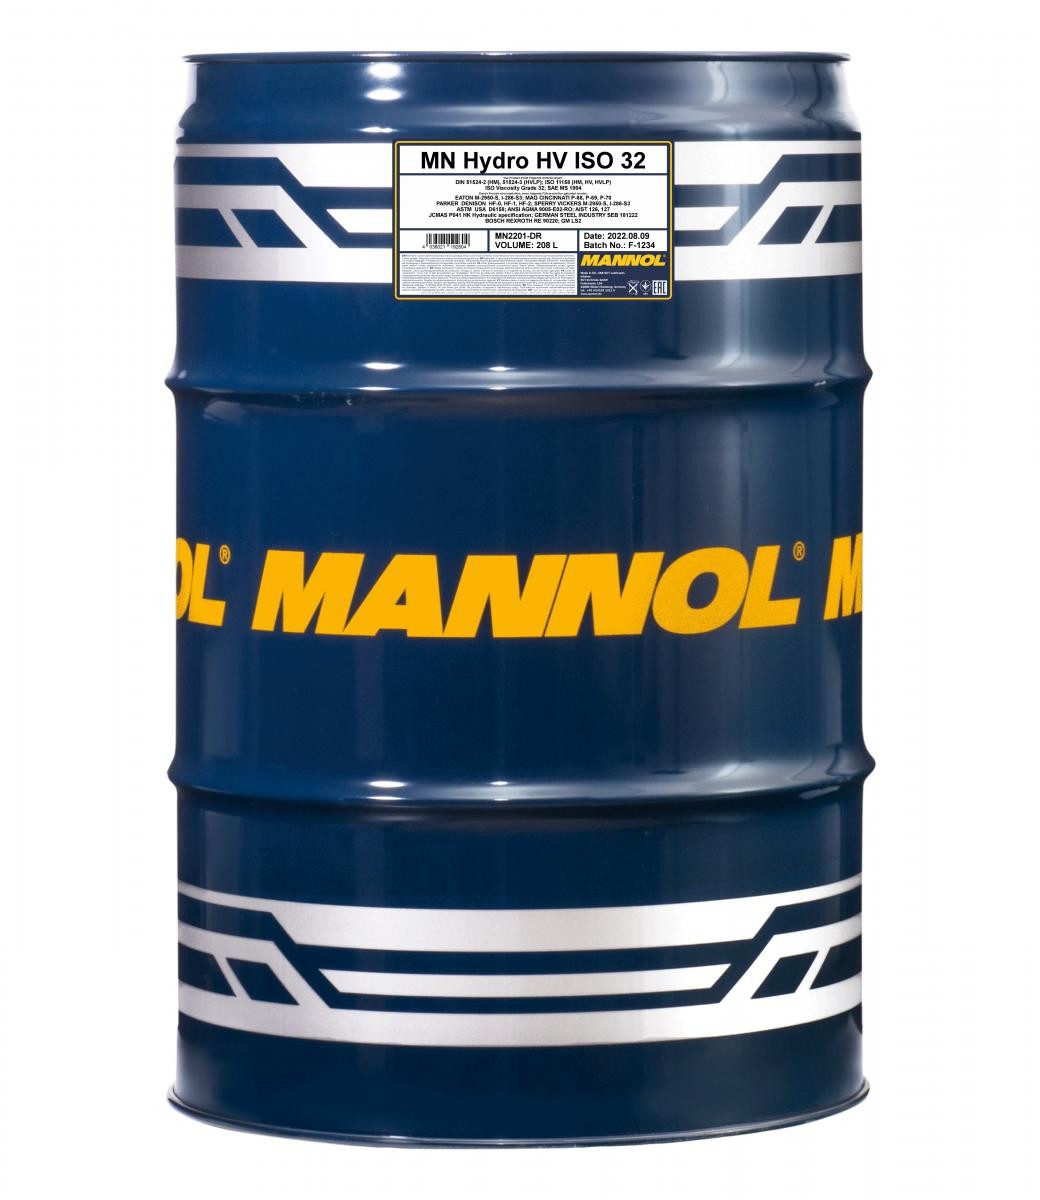 Hydraulic oil MANNOL Hydro HV ISO 32 - MN2201-DR